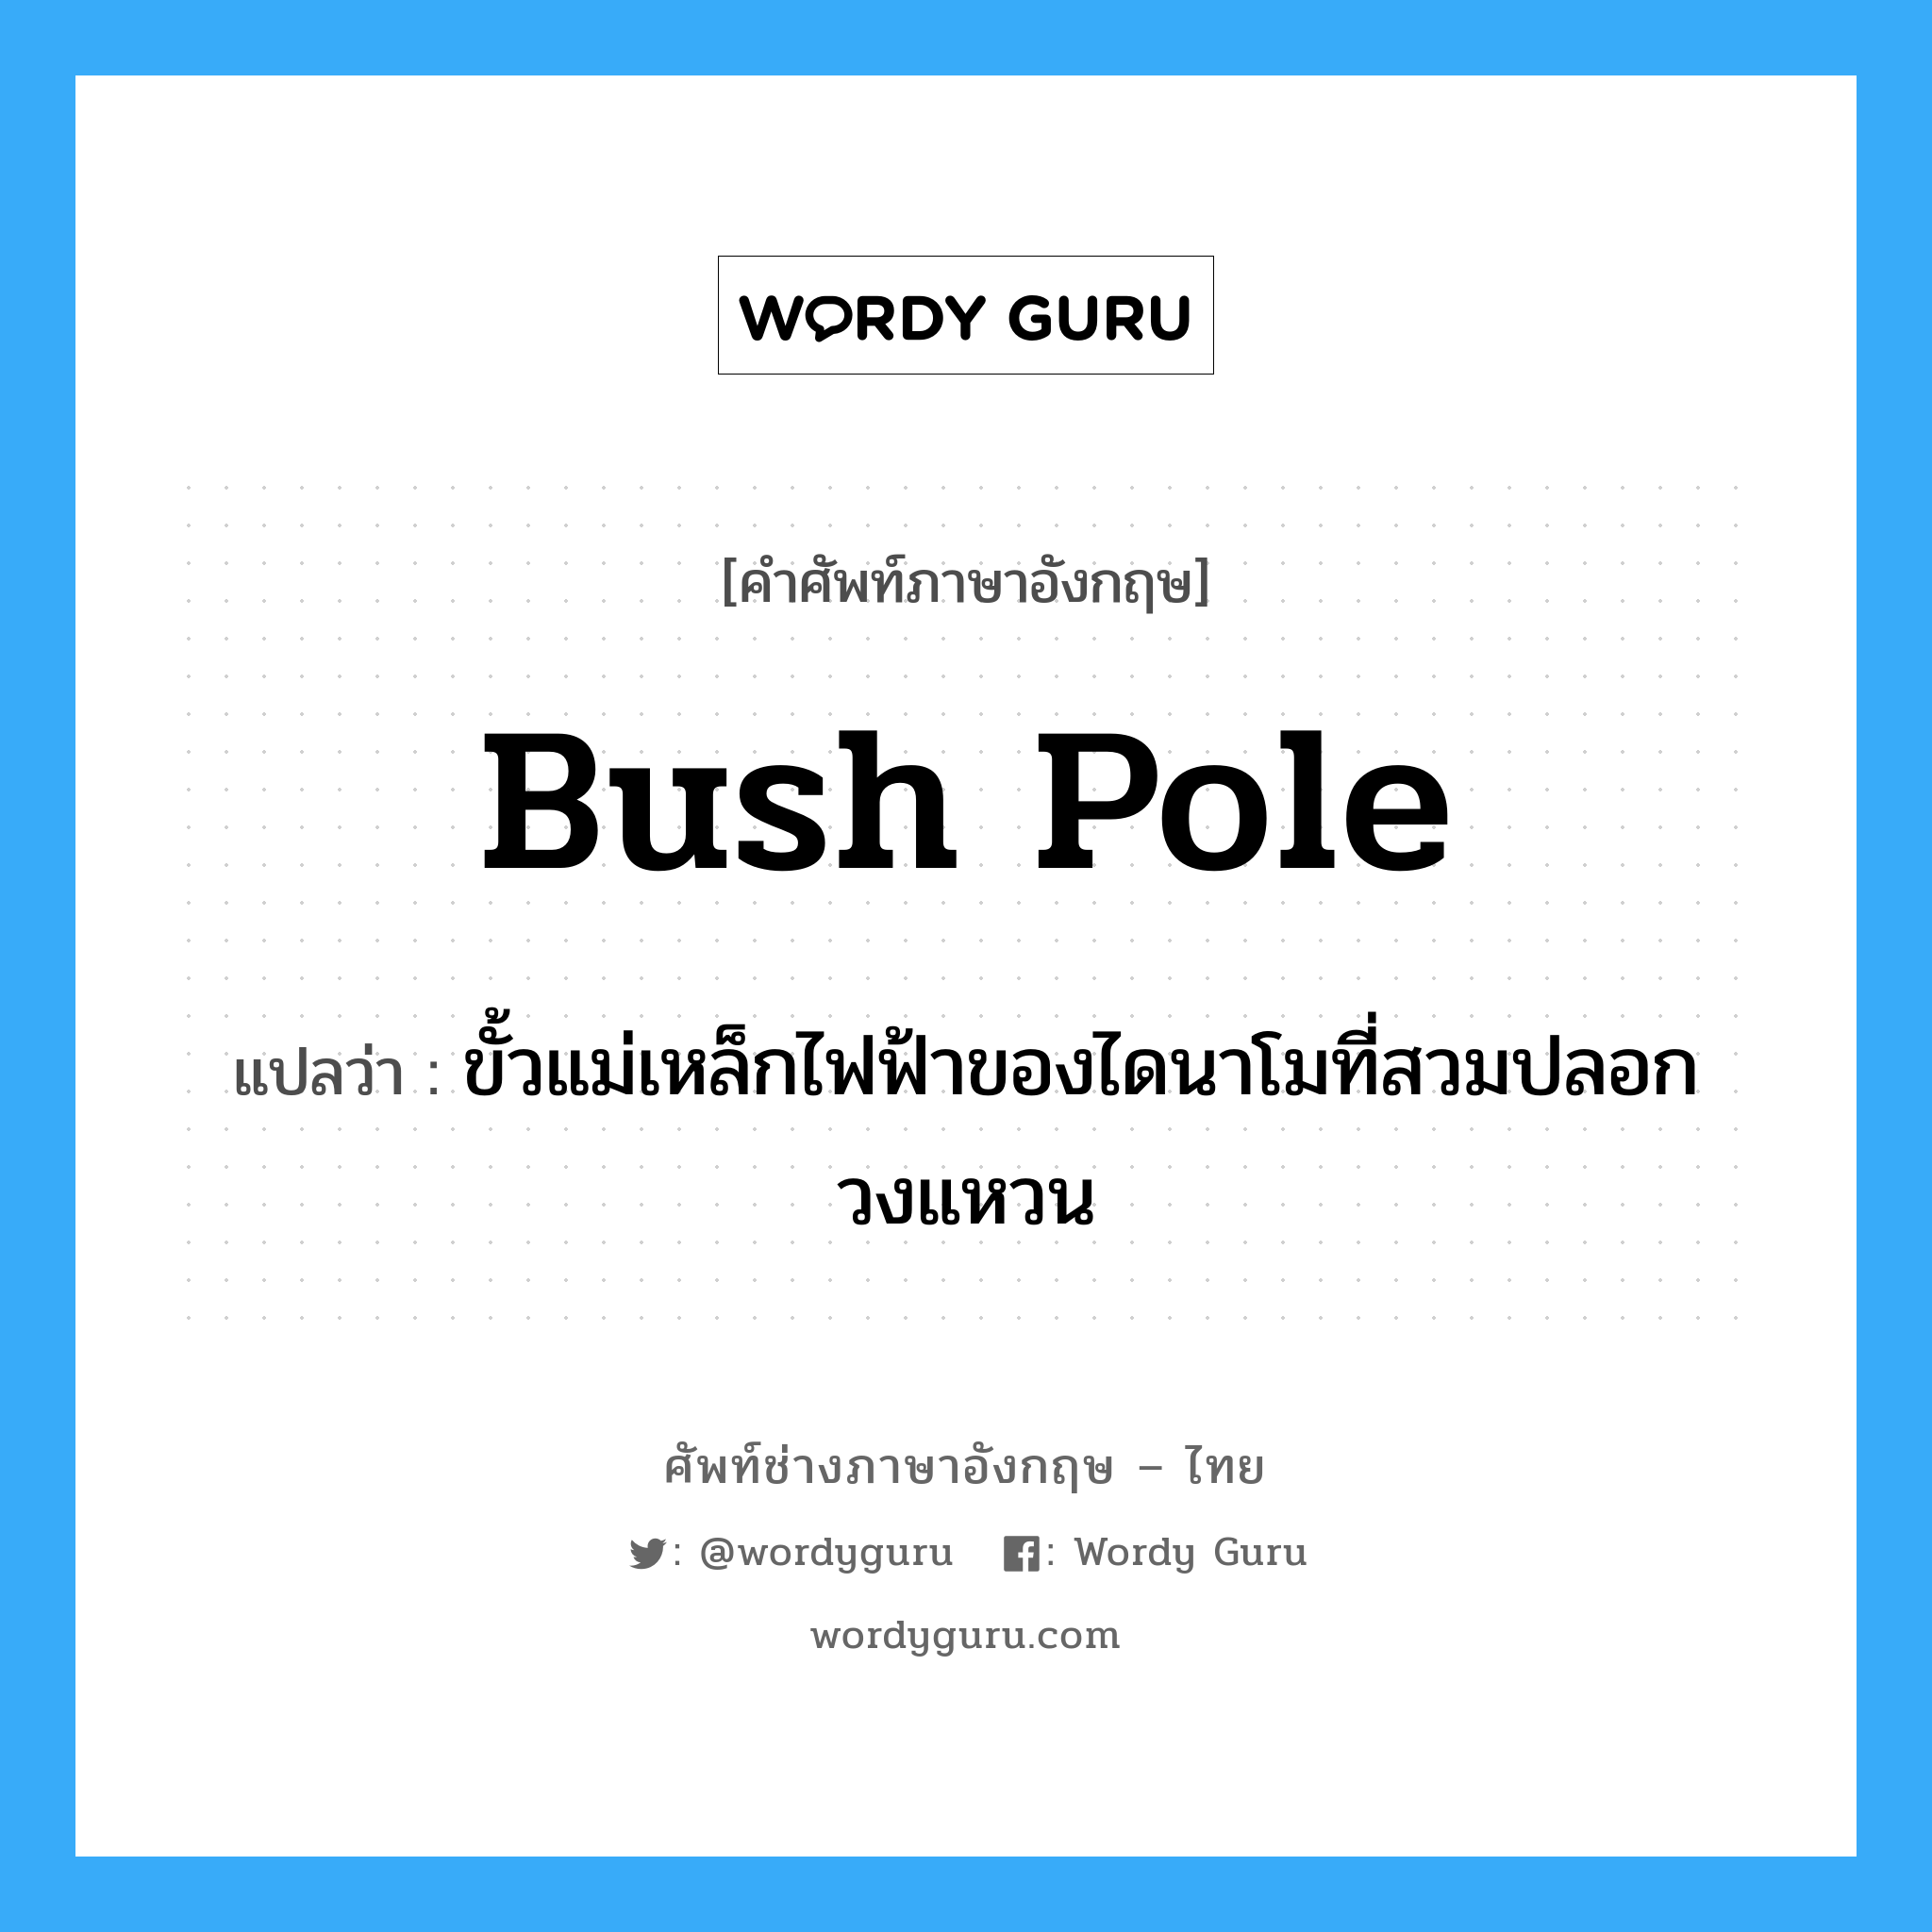 bush pole แปลว่า?, คำศัพท์ช่างภาษาอังกฤษ - ไทย bush pole คำศัพท์ภาษาอังกฤษ bush pole แปลว่า ขั้วแม่เหล็กไฟฟ้าของไดนาโมที่สวมปลอกวงแหวน